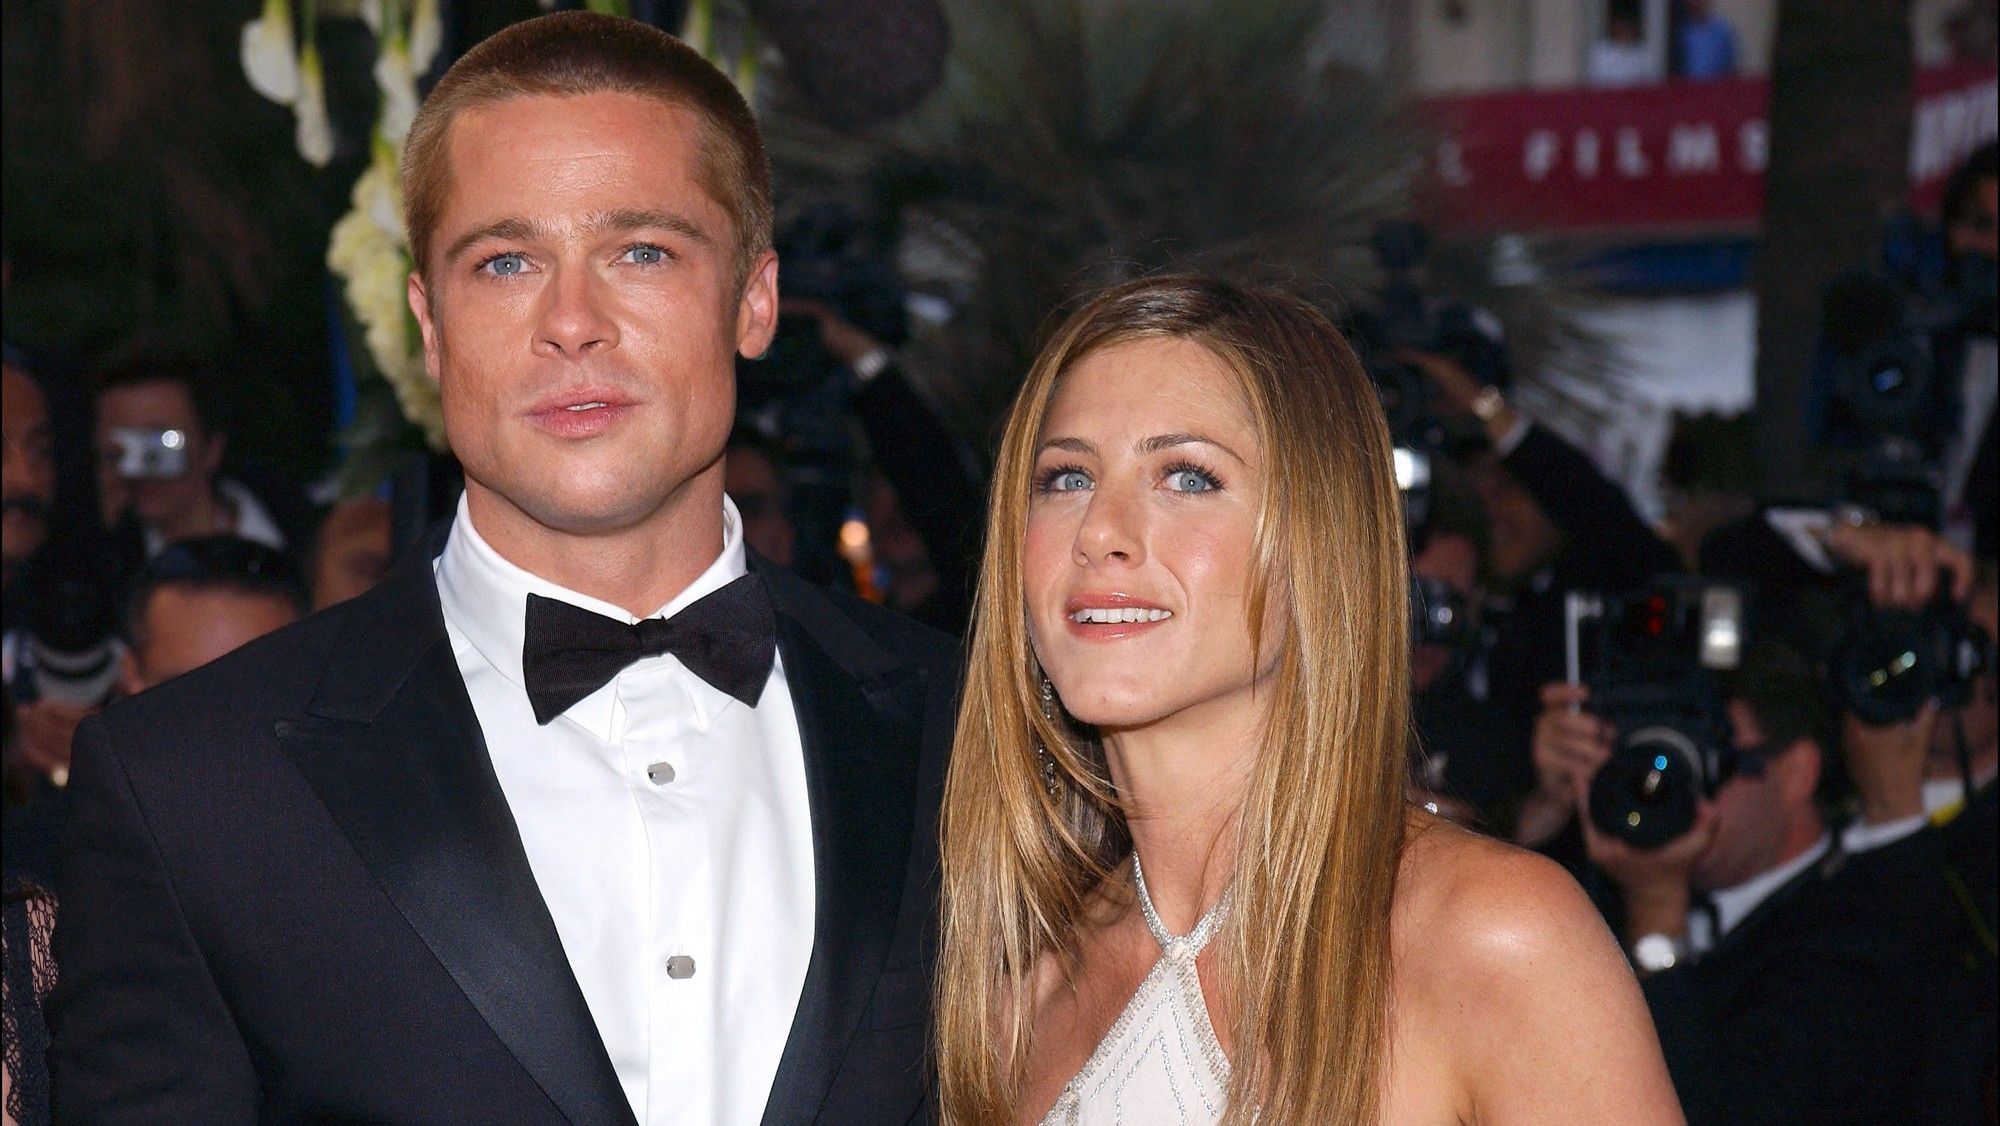 Jennifer Aniston (Friends) évoque son ex Brad Pitt : "Monsieur Pitt était merveilleux"